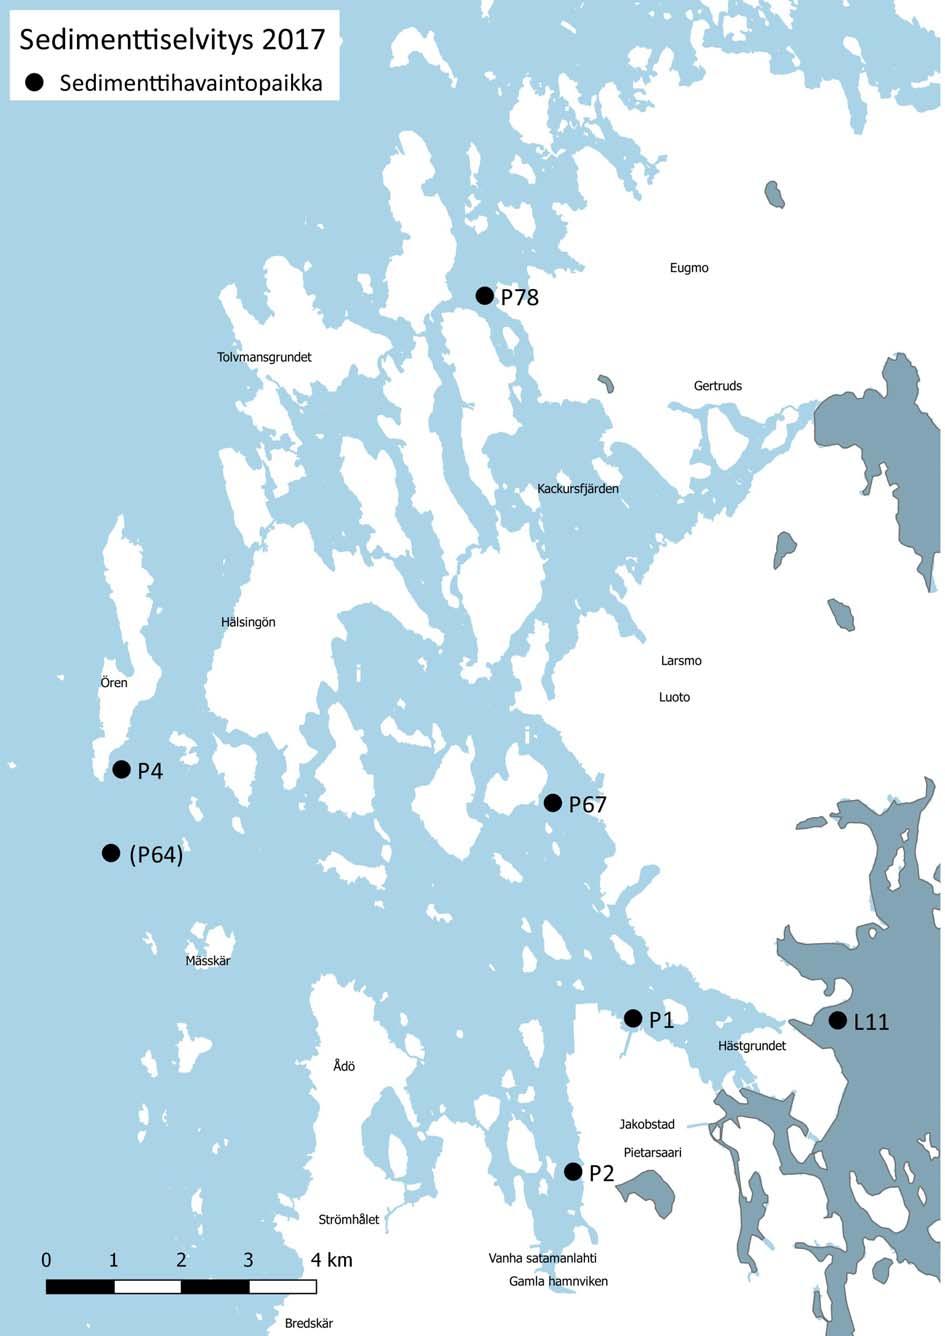 Liite/ Bilaga 14 Pietarsaaren edustan sedimenttiselvityksen havaintopisteet vuonna 217.